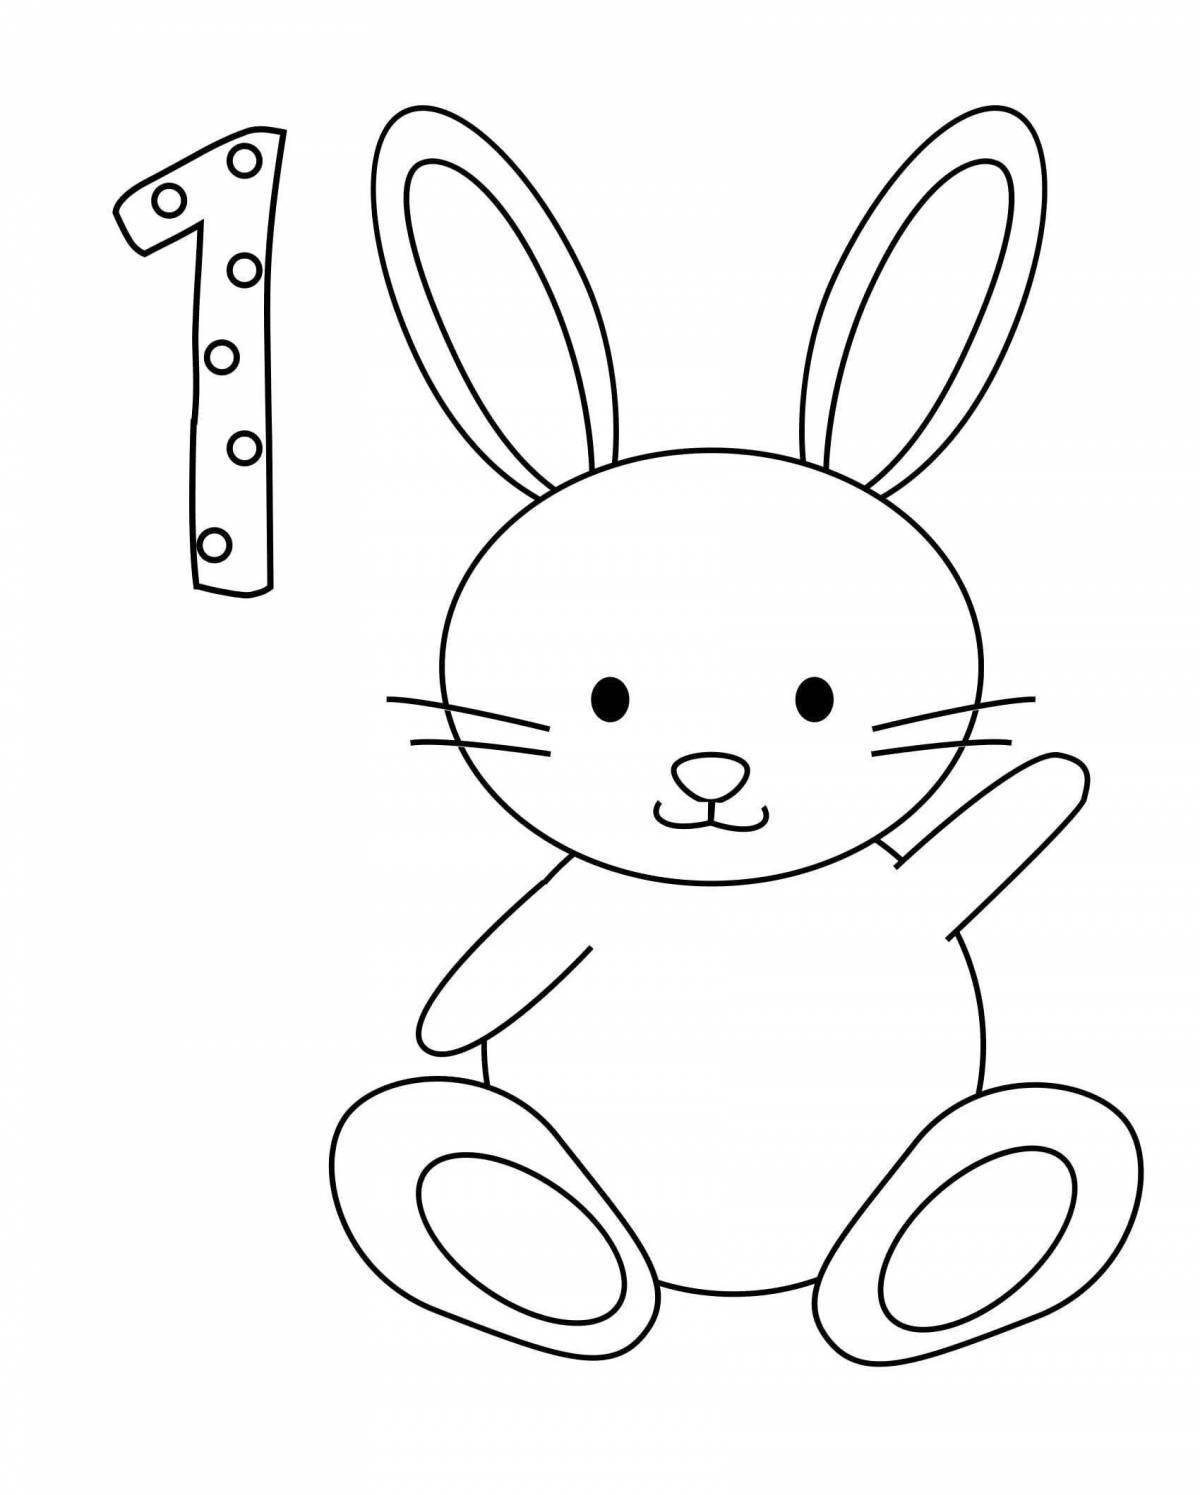 Творческая раскраска кролик для детей 2-3 лет